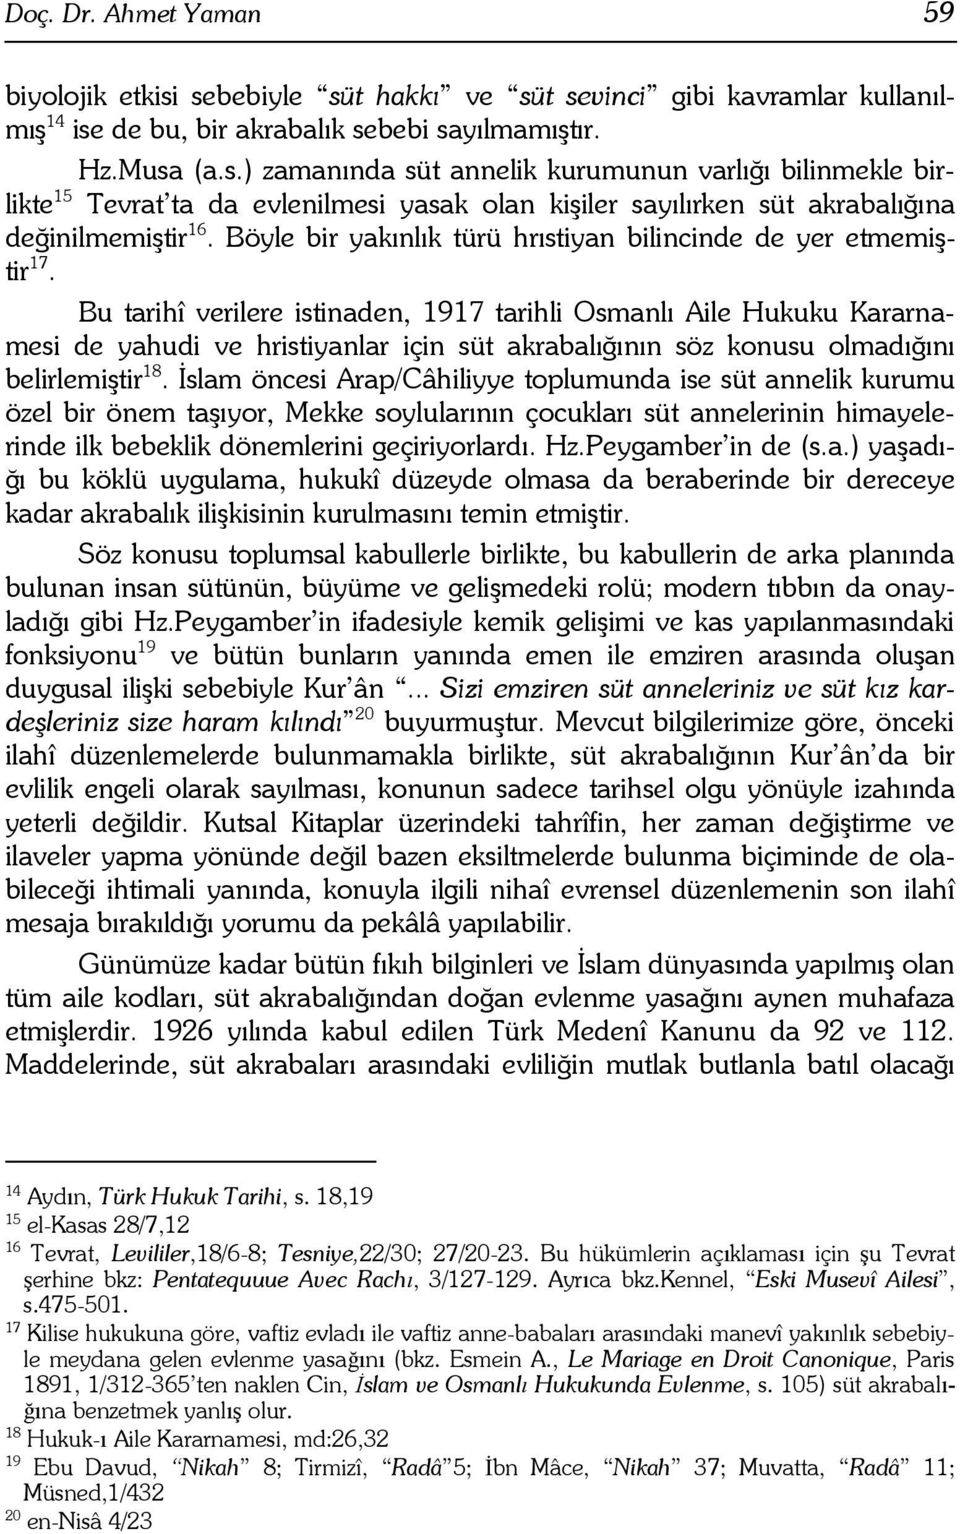 Bu tarihî verilere istinaden, 1917 tarihli Osmanl" Aile Hukuku Kararnamesi de yahudi ve hristiyanlar için süt akrabal"#"n"n söz konusu olmad"#"n" belirlemi$tir 18.